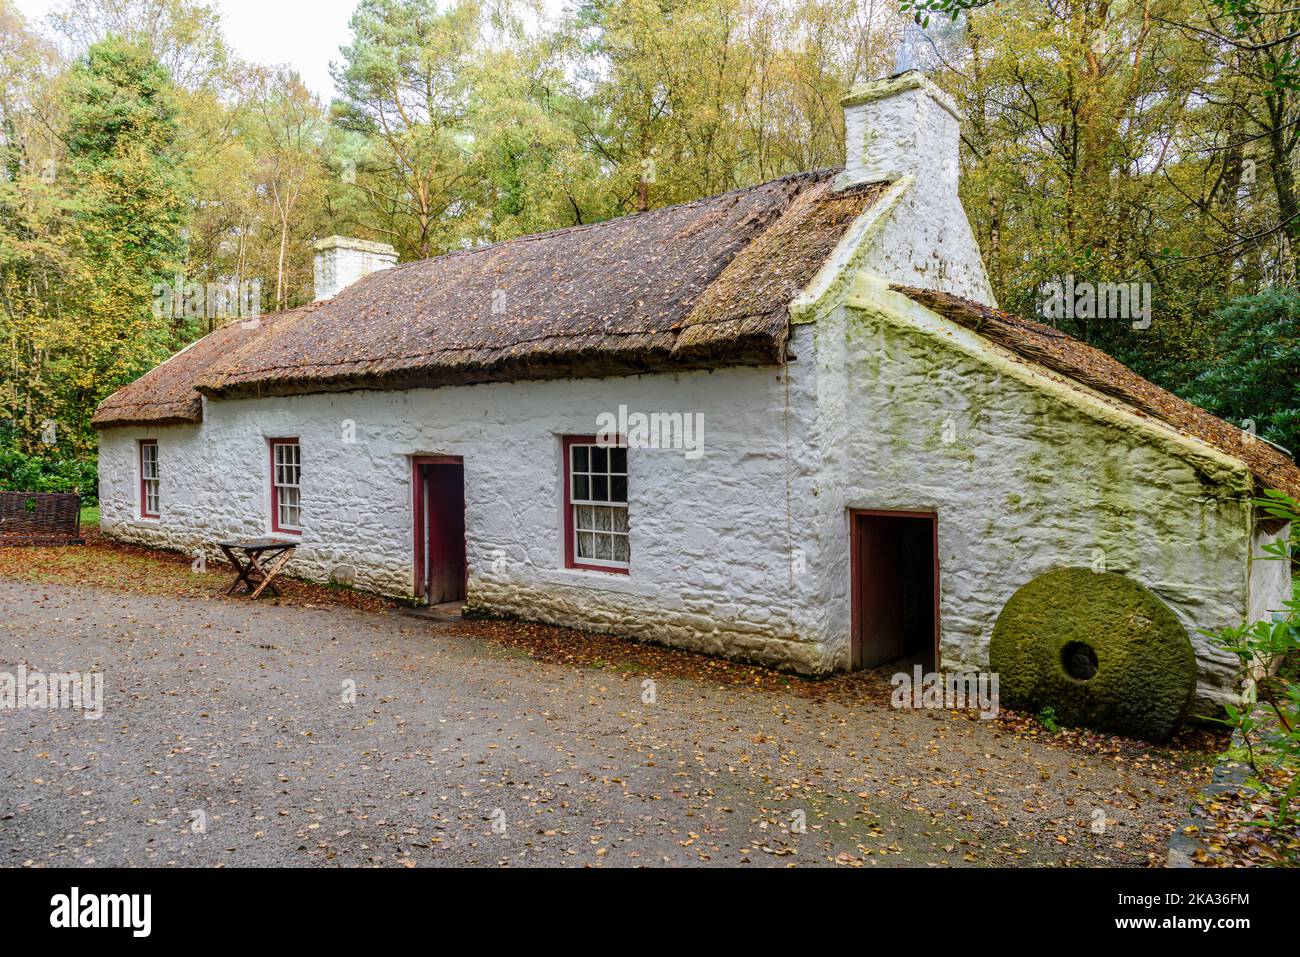 Très petit, trois pièces, maison de chaume irlandaise, commune parmi les ouvriers agricoles au 1800s 19th siècle Banque D'Images